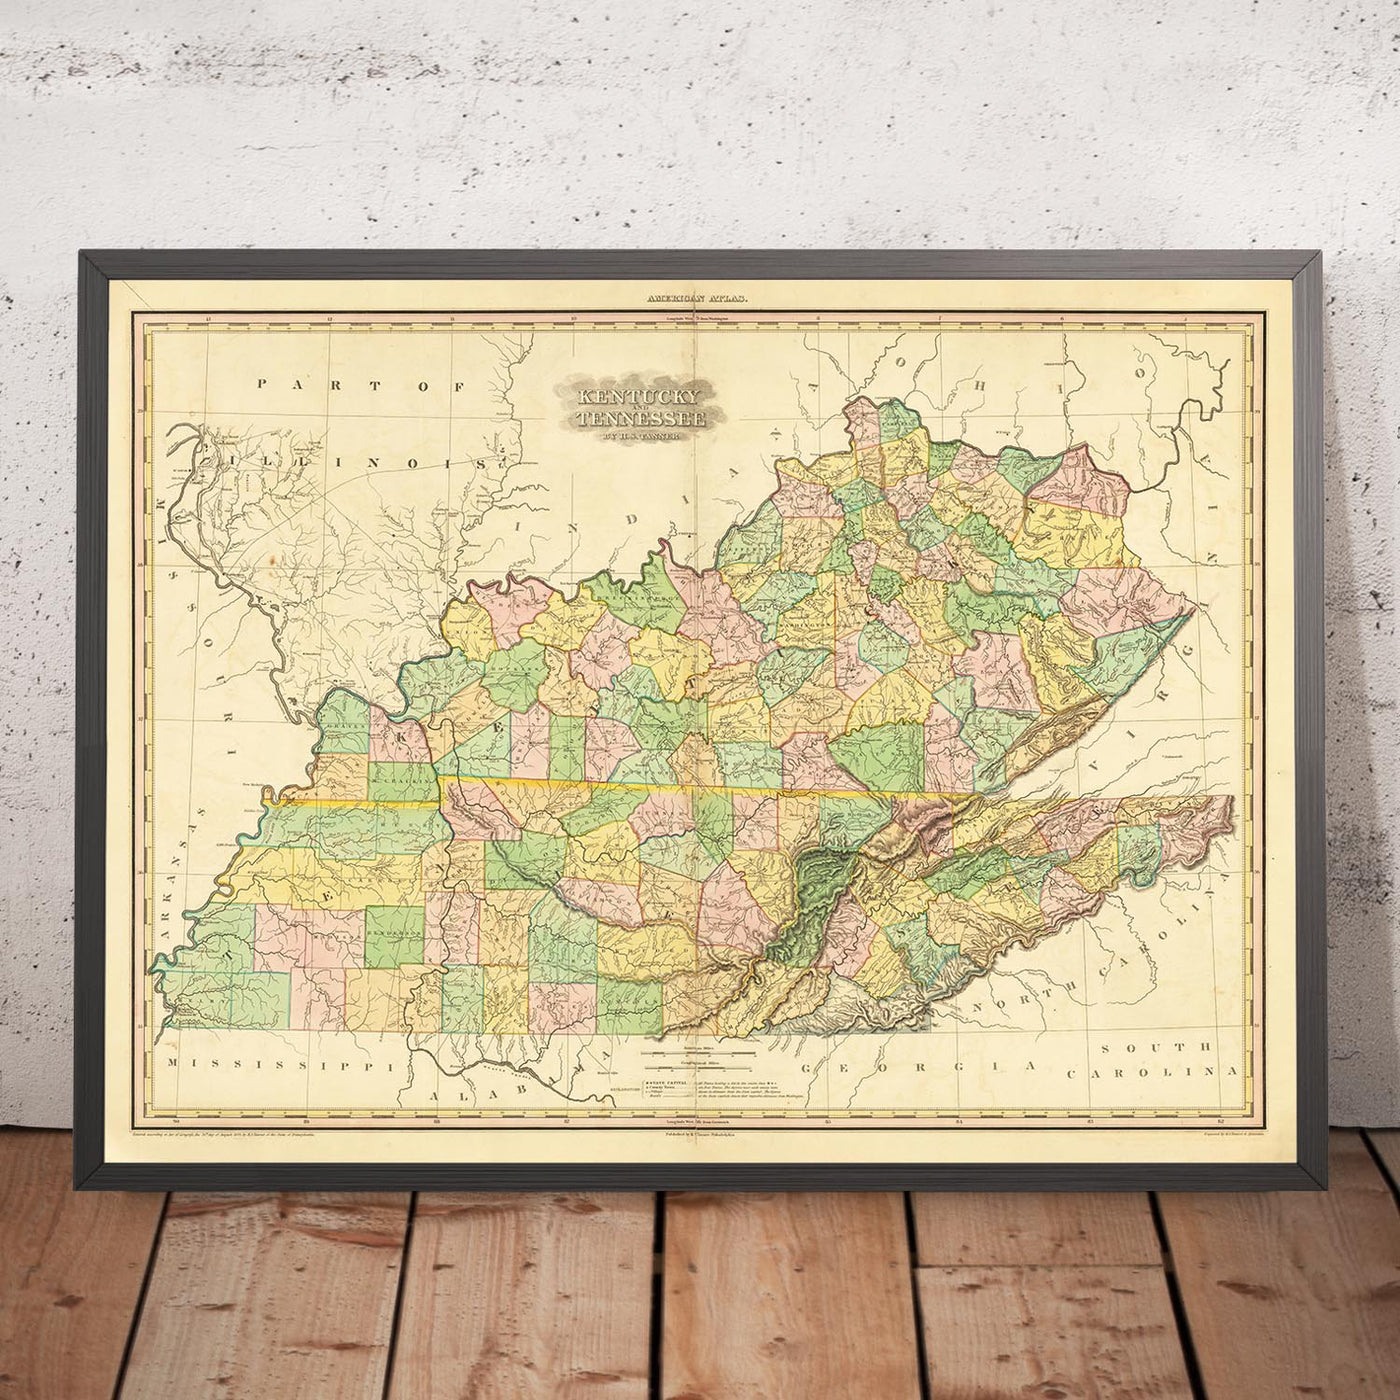 Alte Karte von Kentucky und Tennessee von H. S. Tanner, 1820, mit Nashville, Louisville, Lexington, Knoxville und Chattanooga